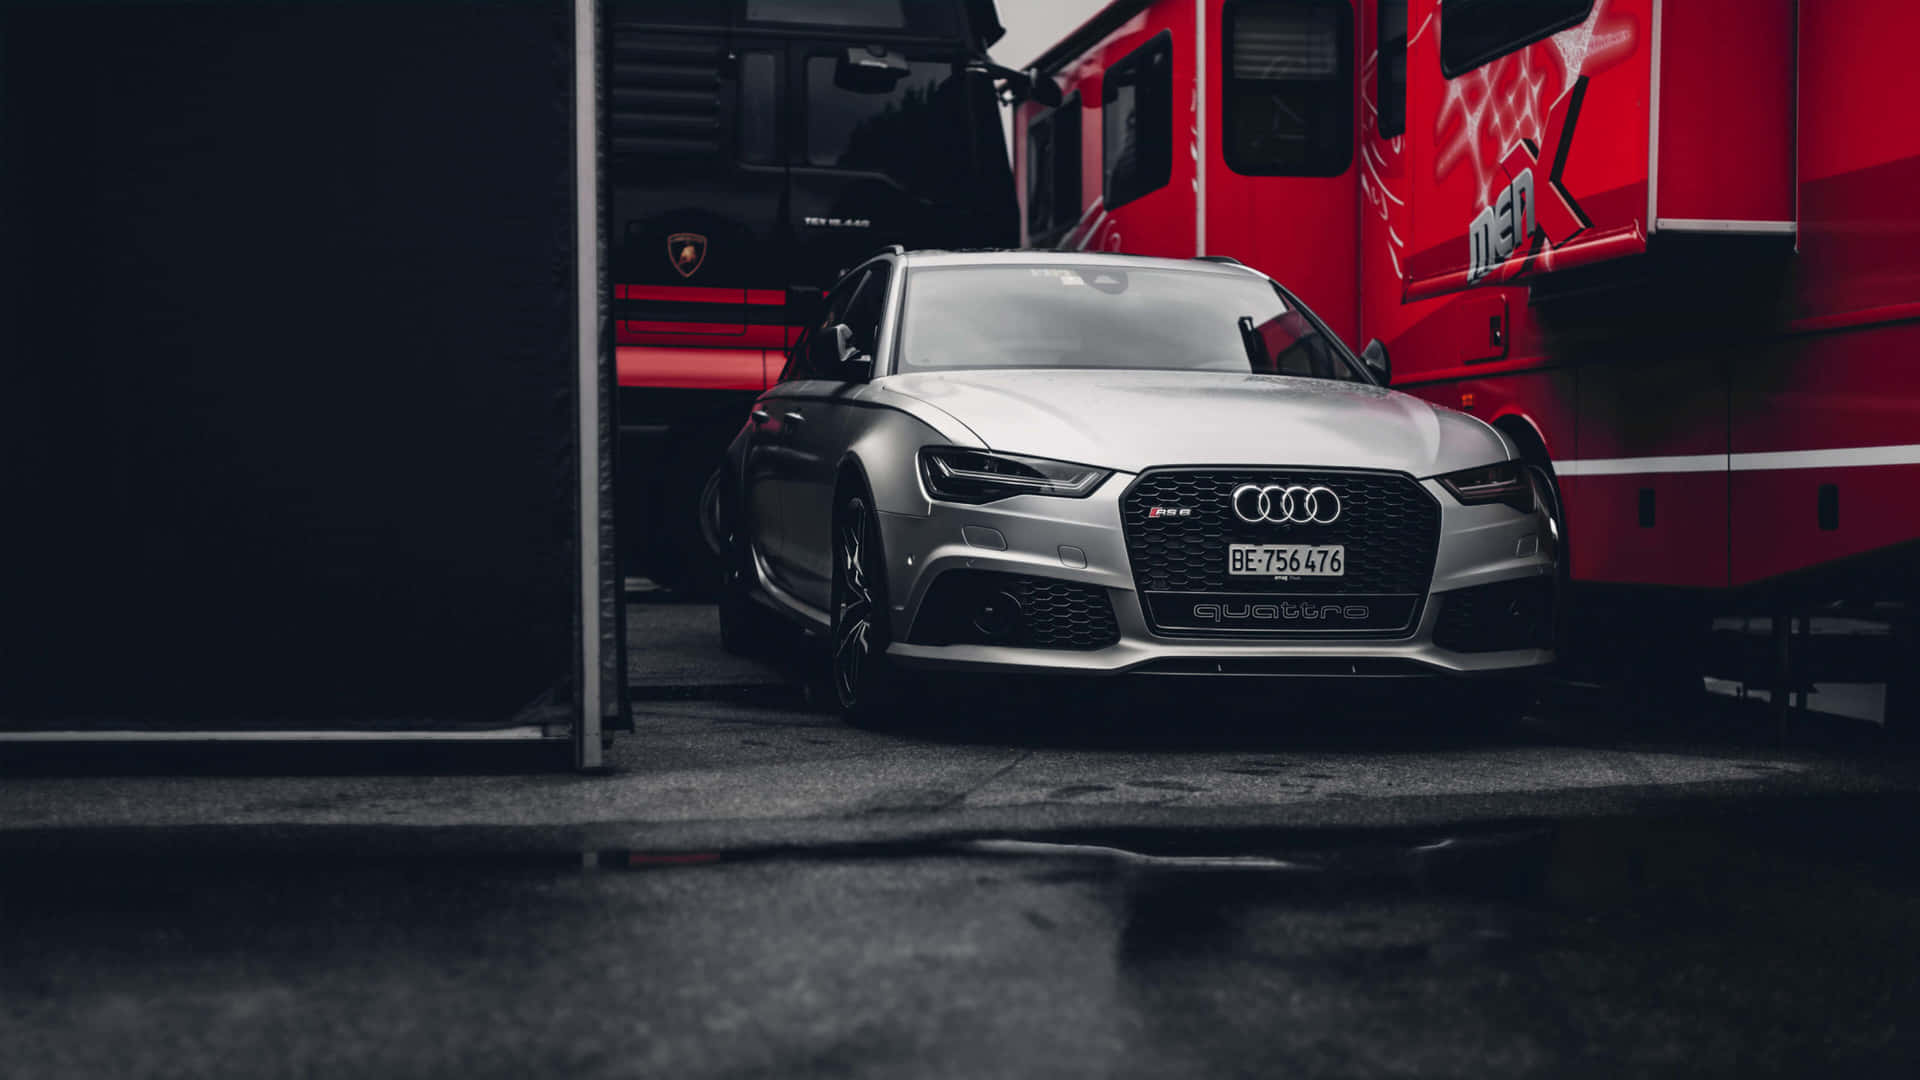 Audi2560 X 1440 Hintergrund